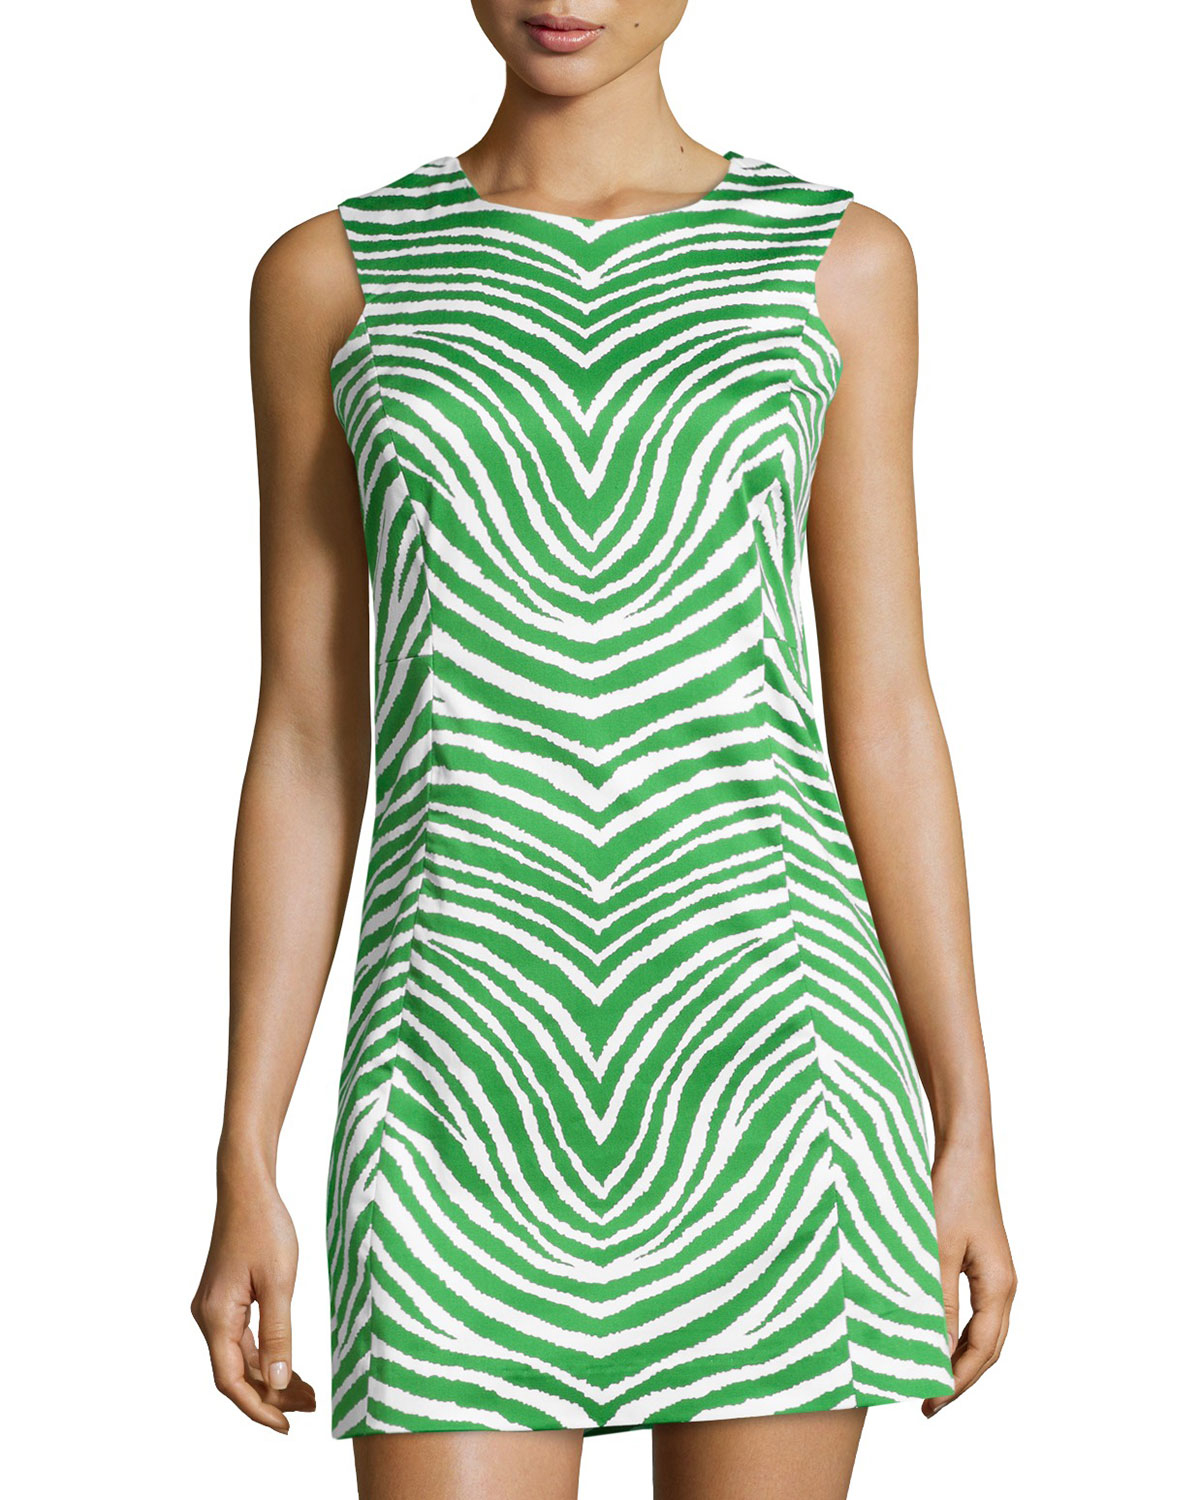 Green zebra dress